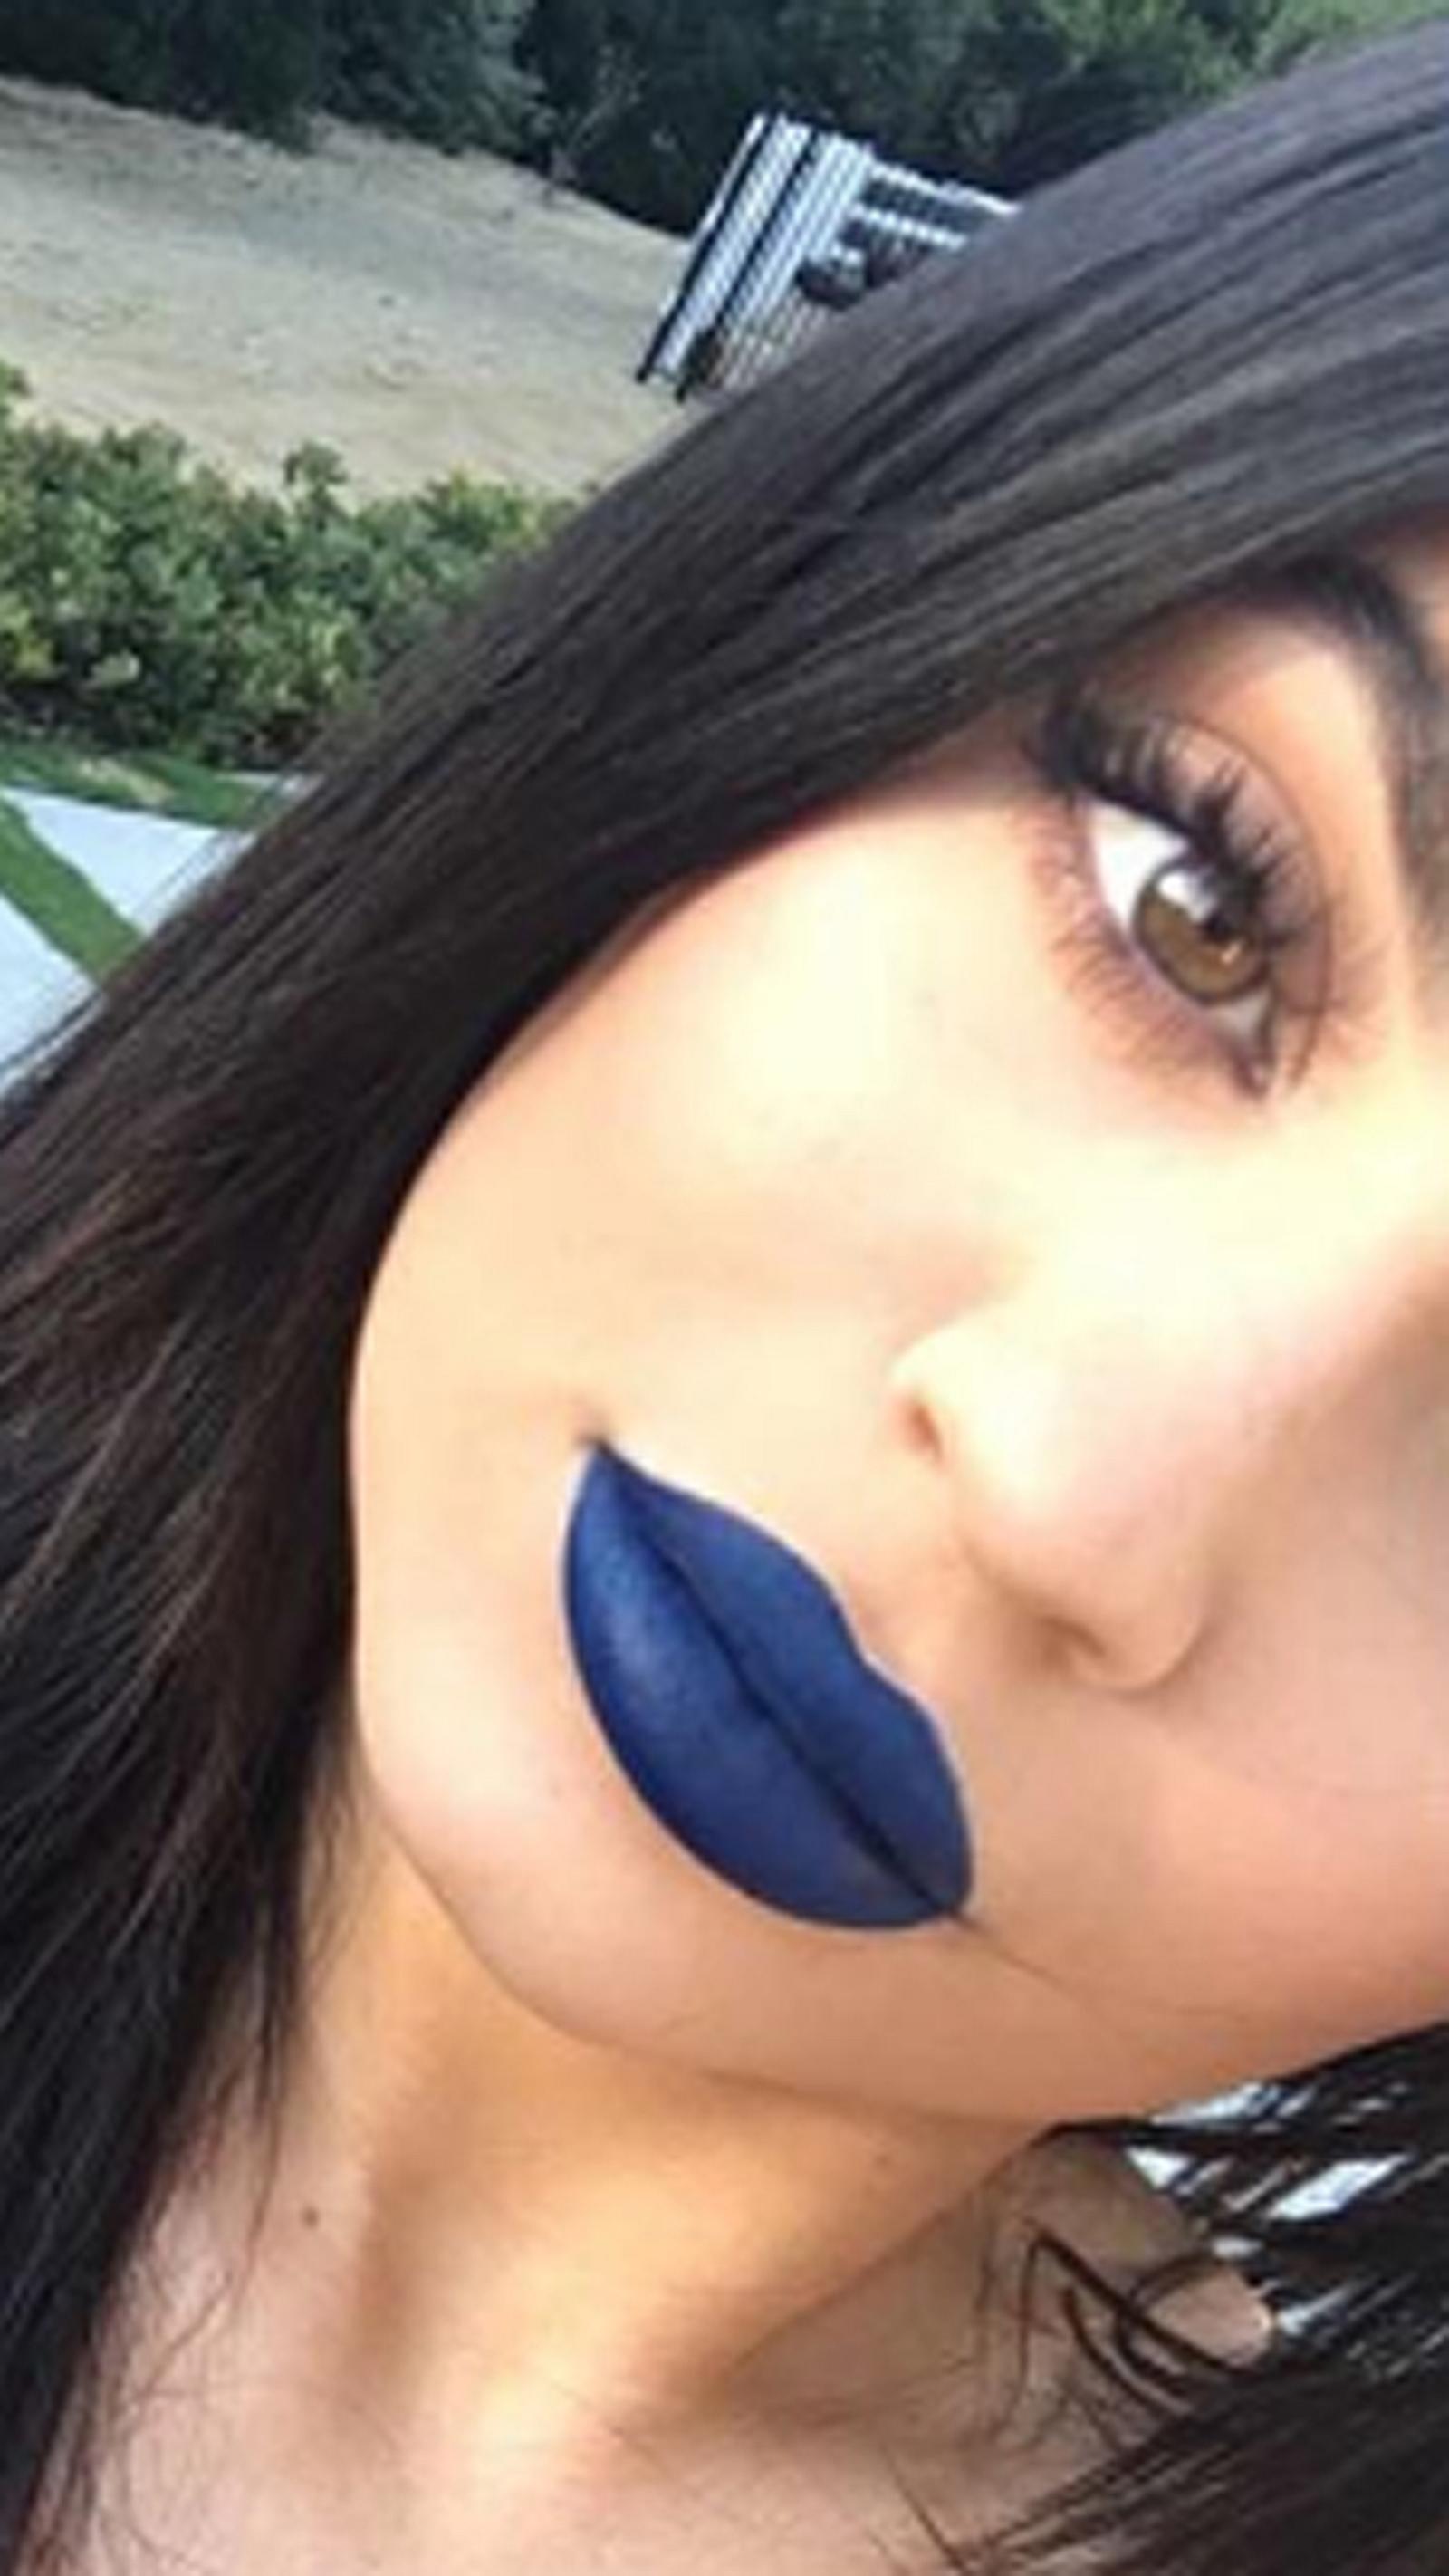 Neuer Beauty-Trend: Unsere Lippen machen jetzt blau!